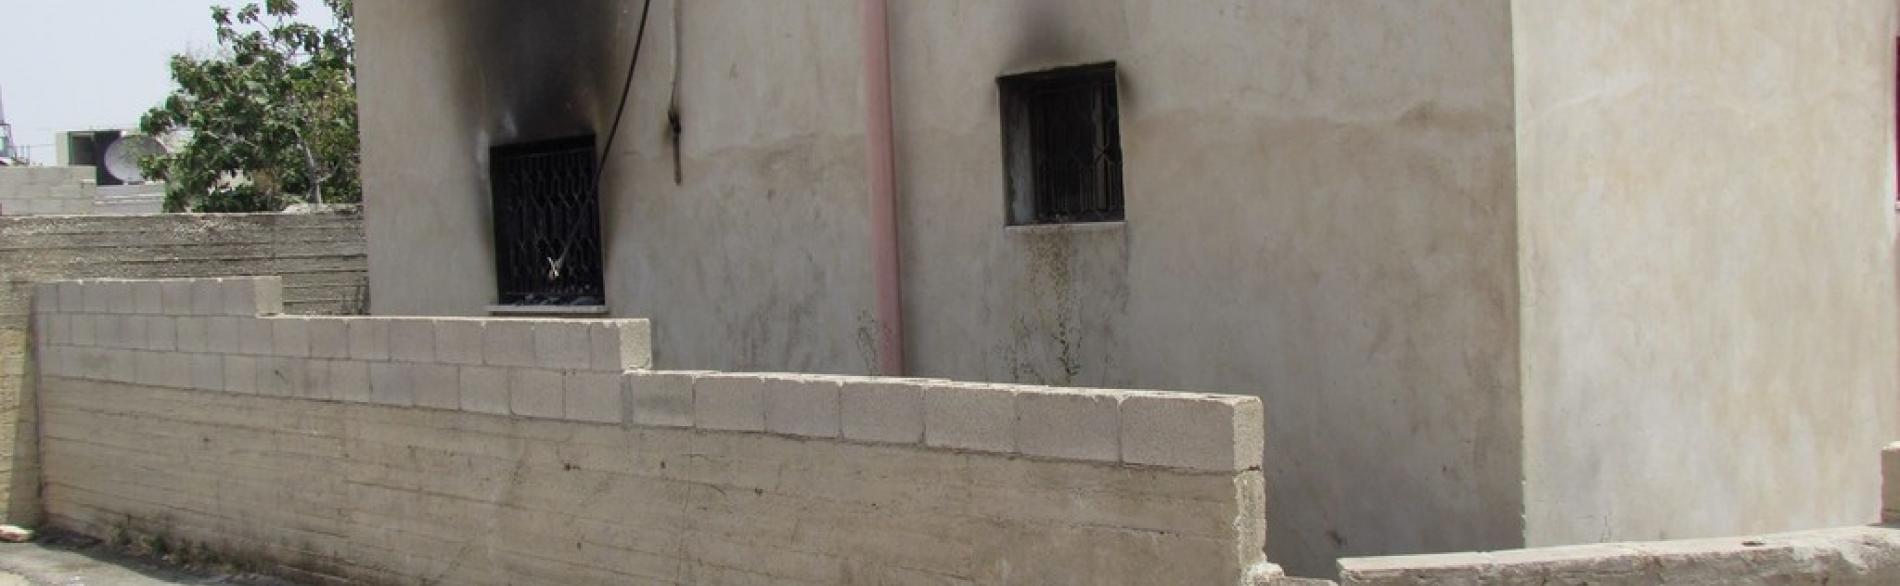 منزل عائلة دوابشة، استهدفه حريق متعمد. صورة بواسطة مكتب تنسيق الشؤون الإنسانية